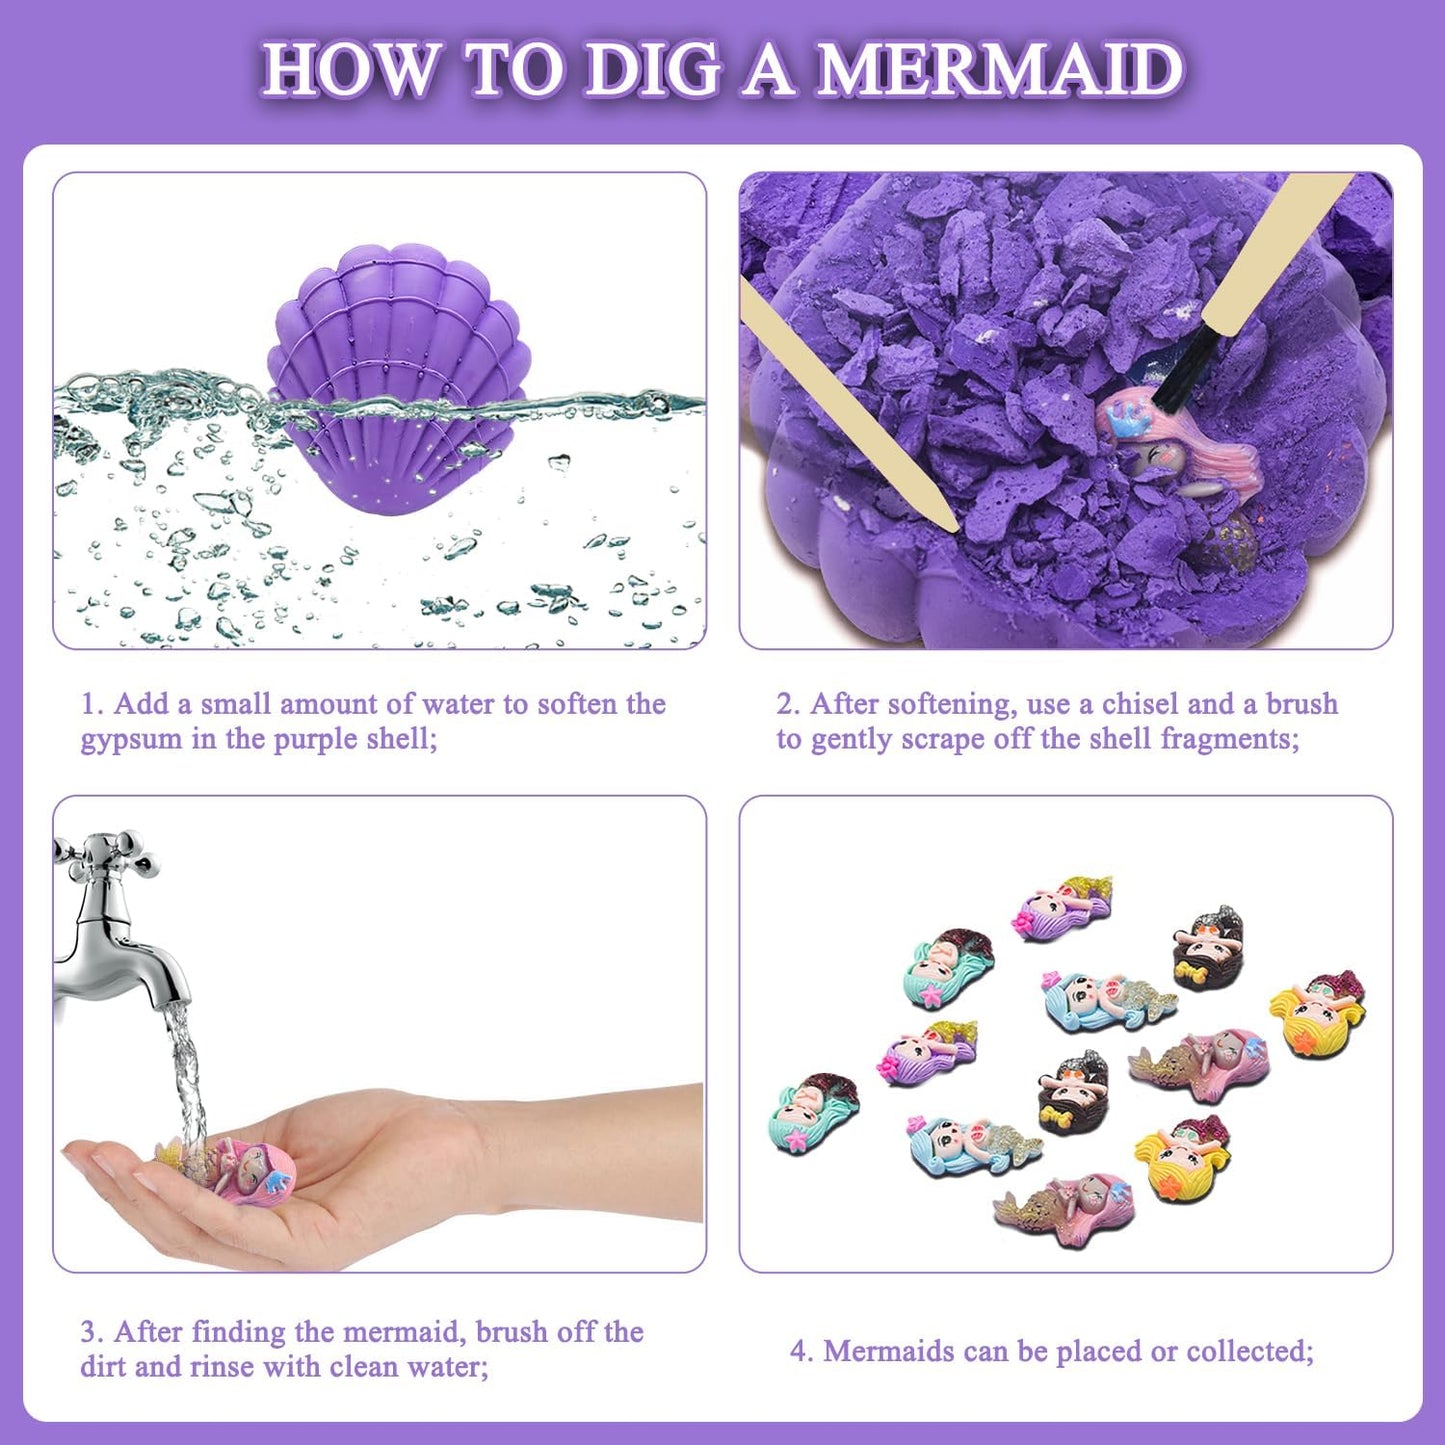 Mermaid Dig Kit